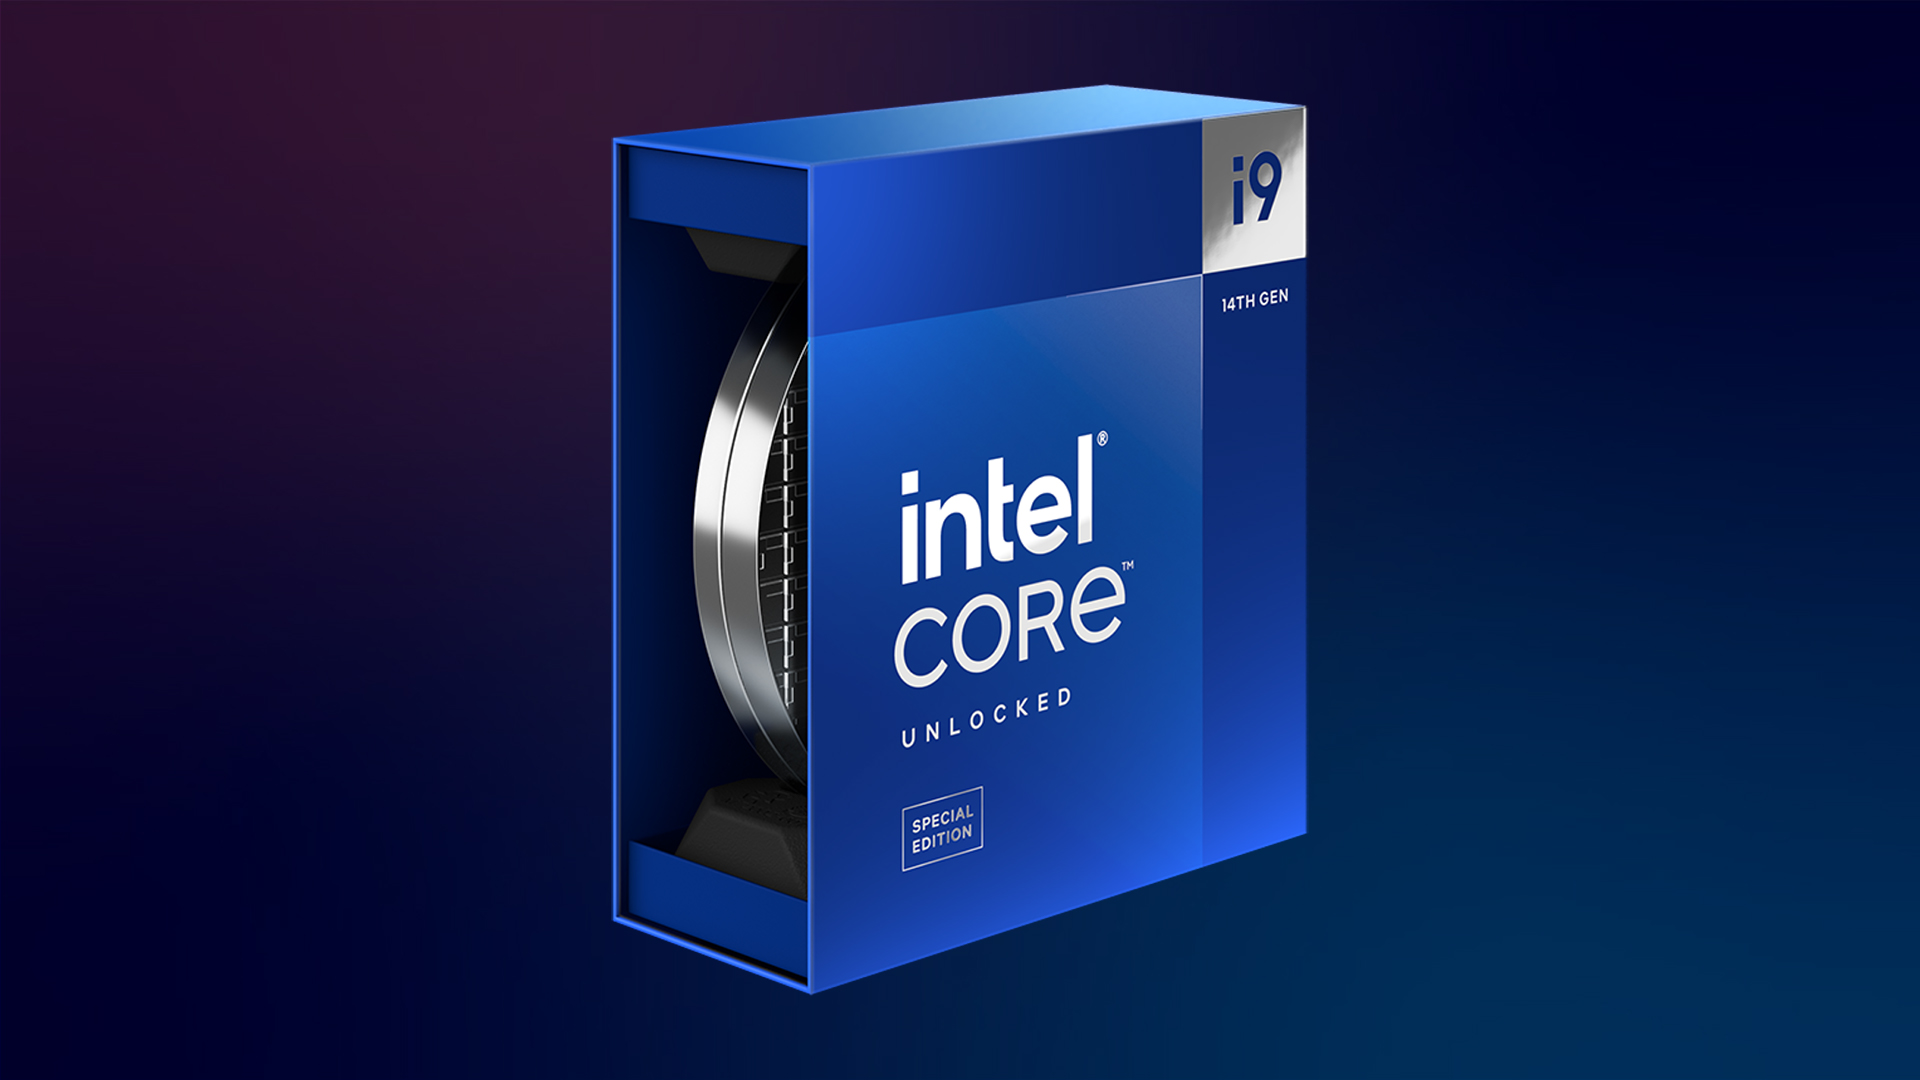 Bao bì của Intel Core i9-14900KS được tiết lộ khi nó được phát hiện tại Việt Nam.